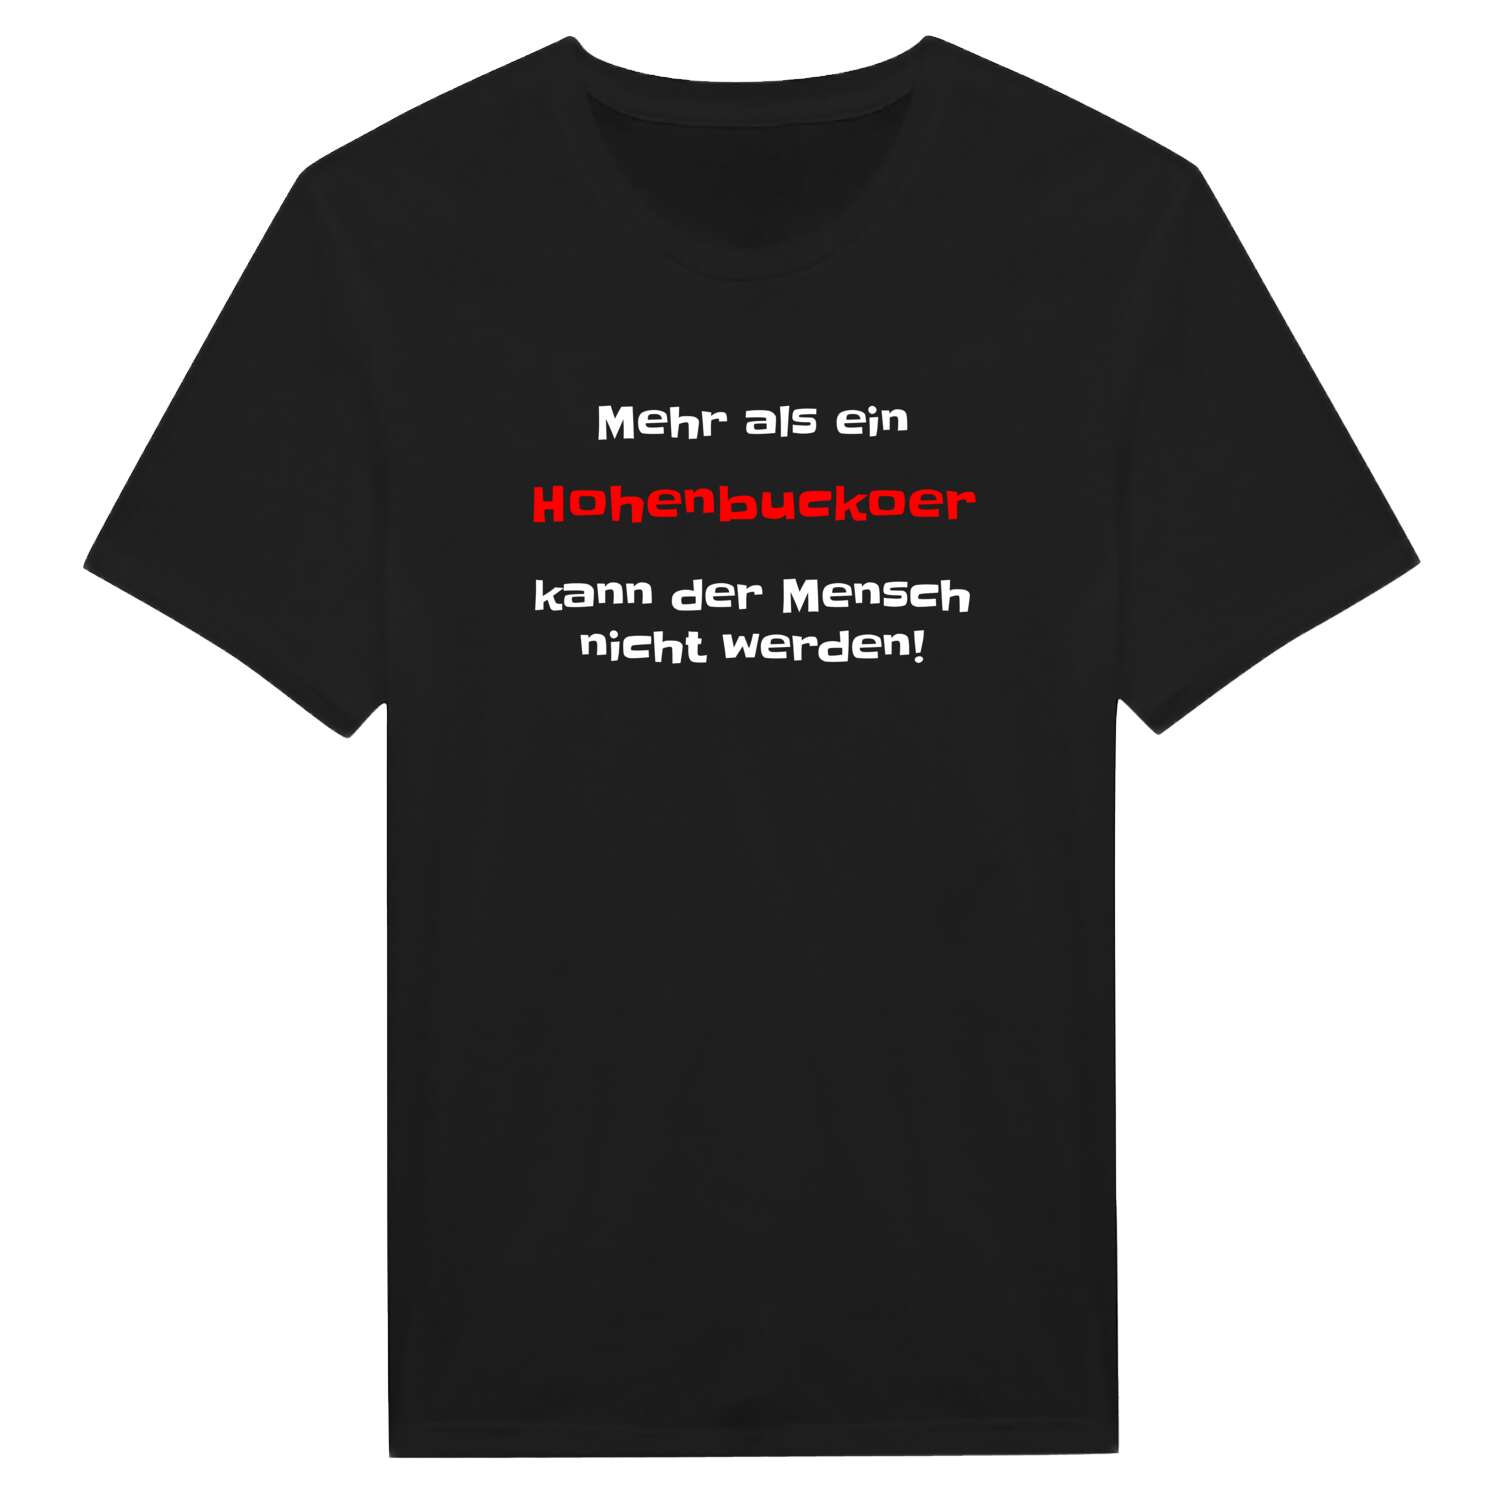 Hohenbucko T-Shirt »Mehr als ein«